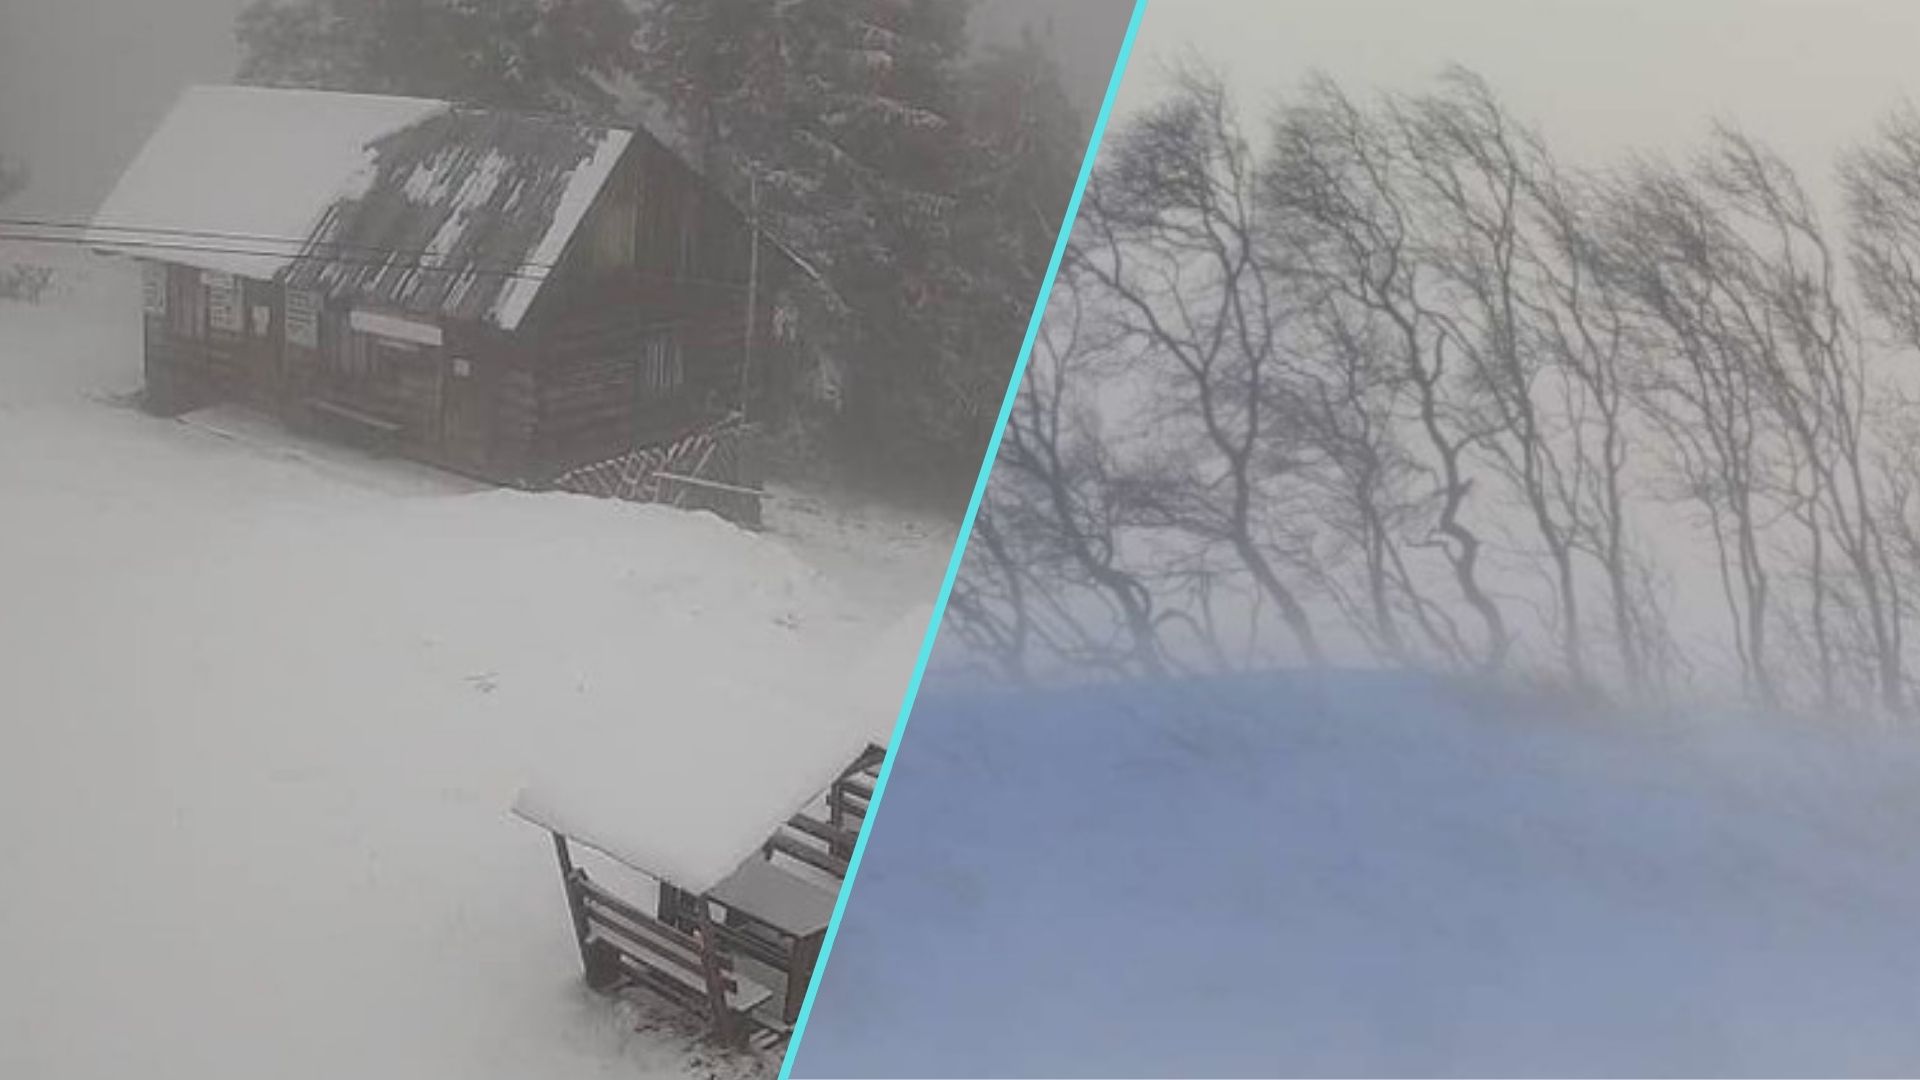 Сьогодні у високогір’ї Закарпатської області зберігається помірна сніголавинна небезпека (ІІ рівень).